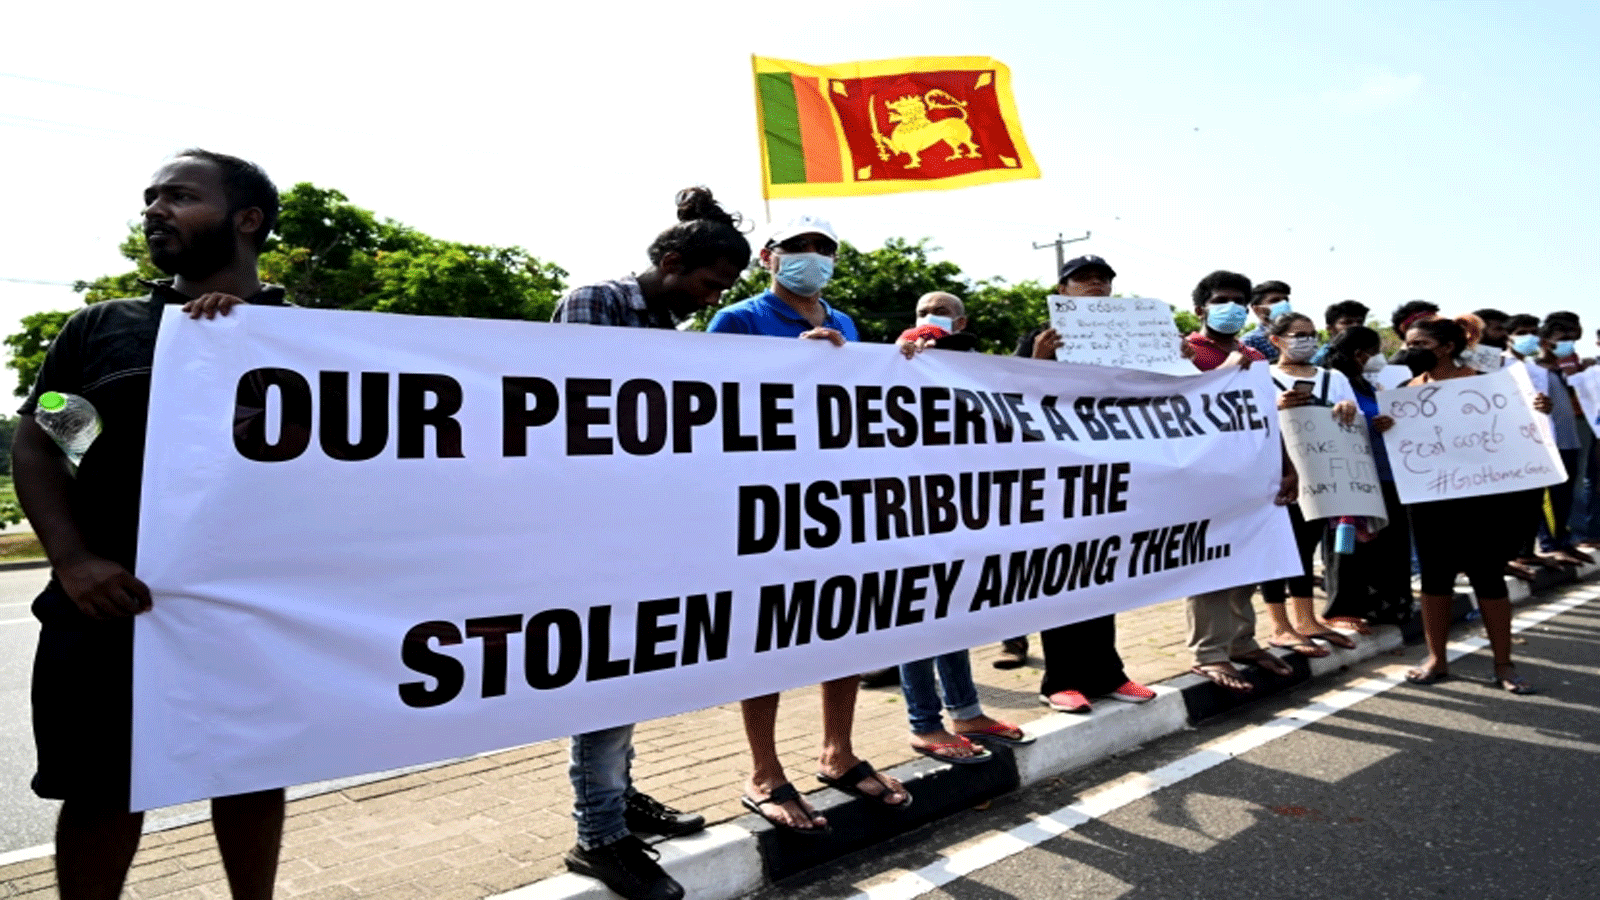 متظاهرون يحملون لافتات خلال مظاهرة ضد ارتفاع الأسعار ونقص الوقود والسلع الأساسية الأخرى، في كولومبو